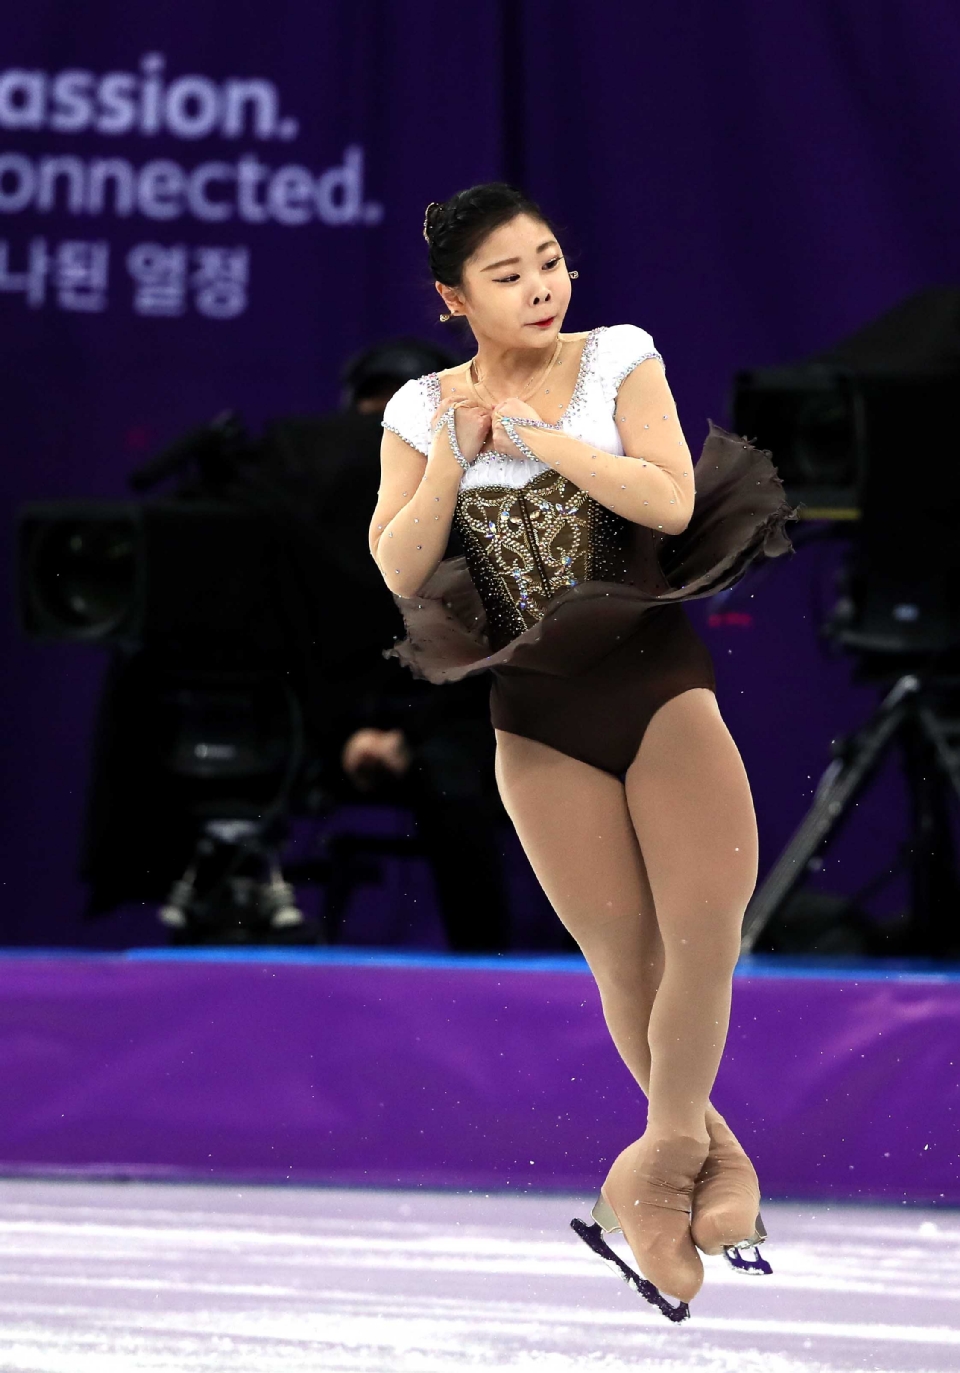 피겨 스케이팅 여자 싱글 스케이팅 쇼트 프로그램, 김하늘 선수 출전(사진출처 : 대한체육회)